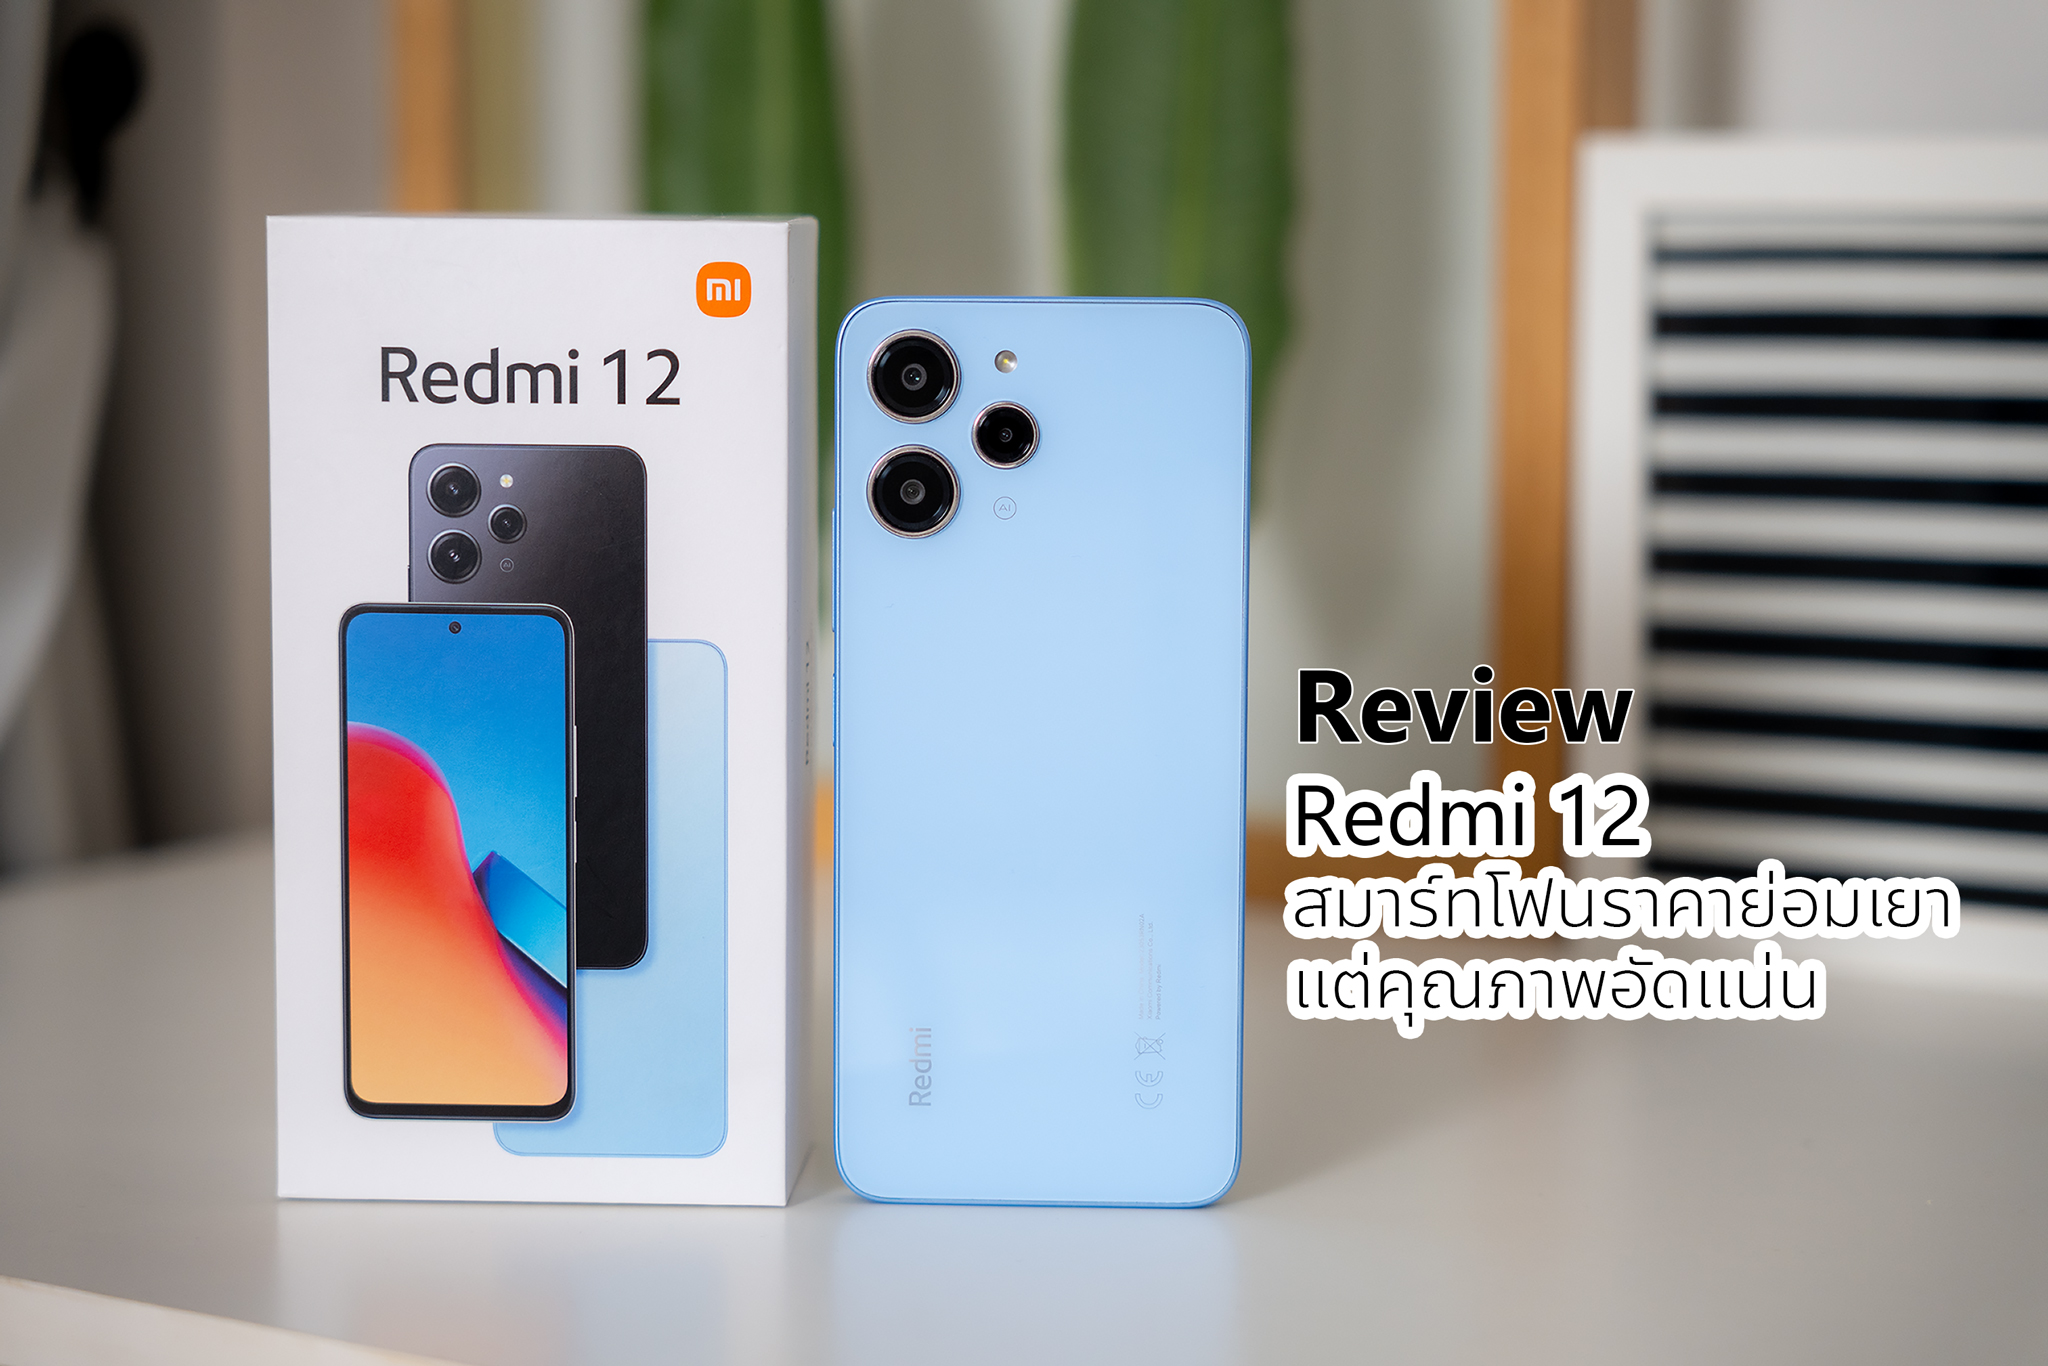 Review : Redmi 12 สมาร์ทโฟนราคาย่อมเยา แต่คุณภาพอัดแน่น จอสวยคมชัด กล้องดี 50MP เกมได้